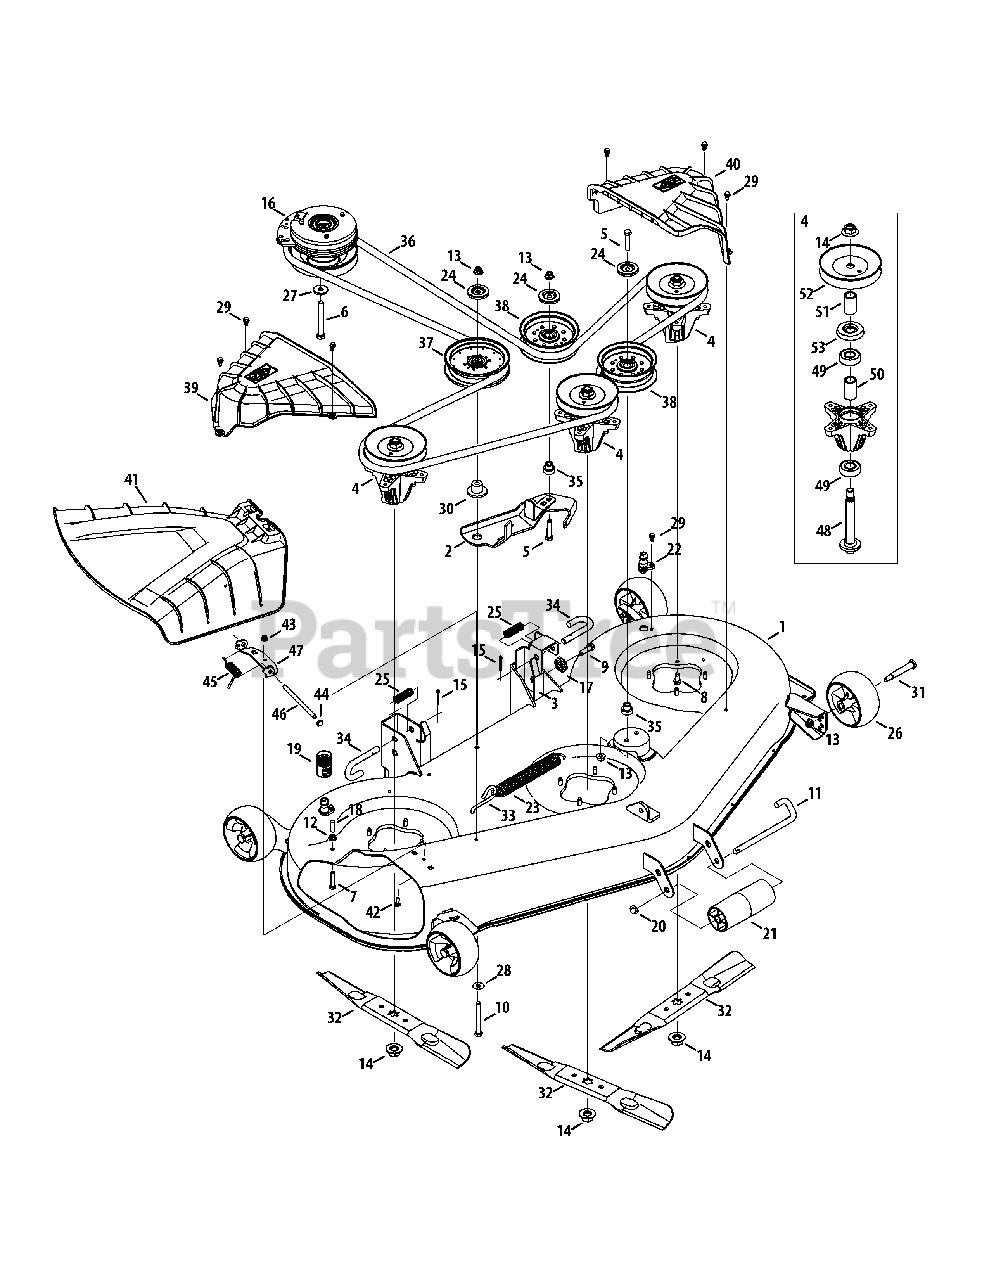 Craftsman 247.204191 (17ARCACW099) - Craftsman Z6600 Zero-Turn Mower ...